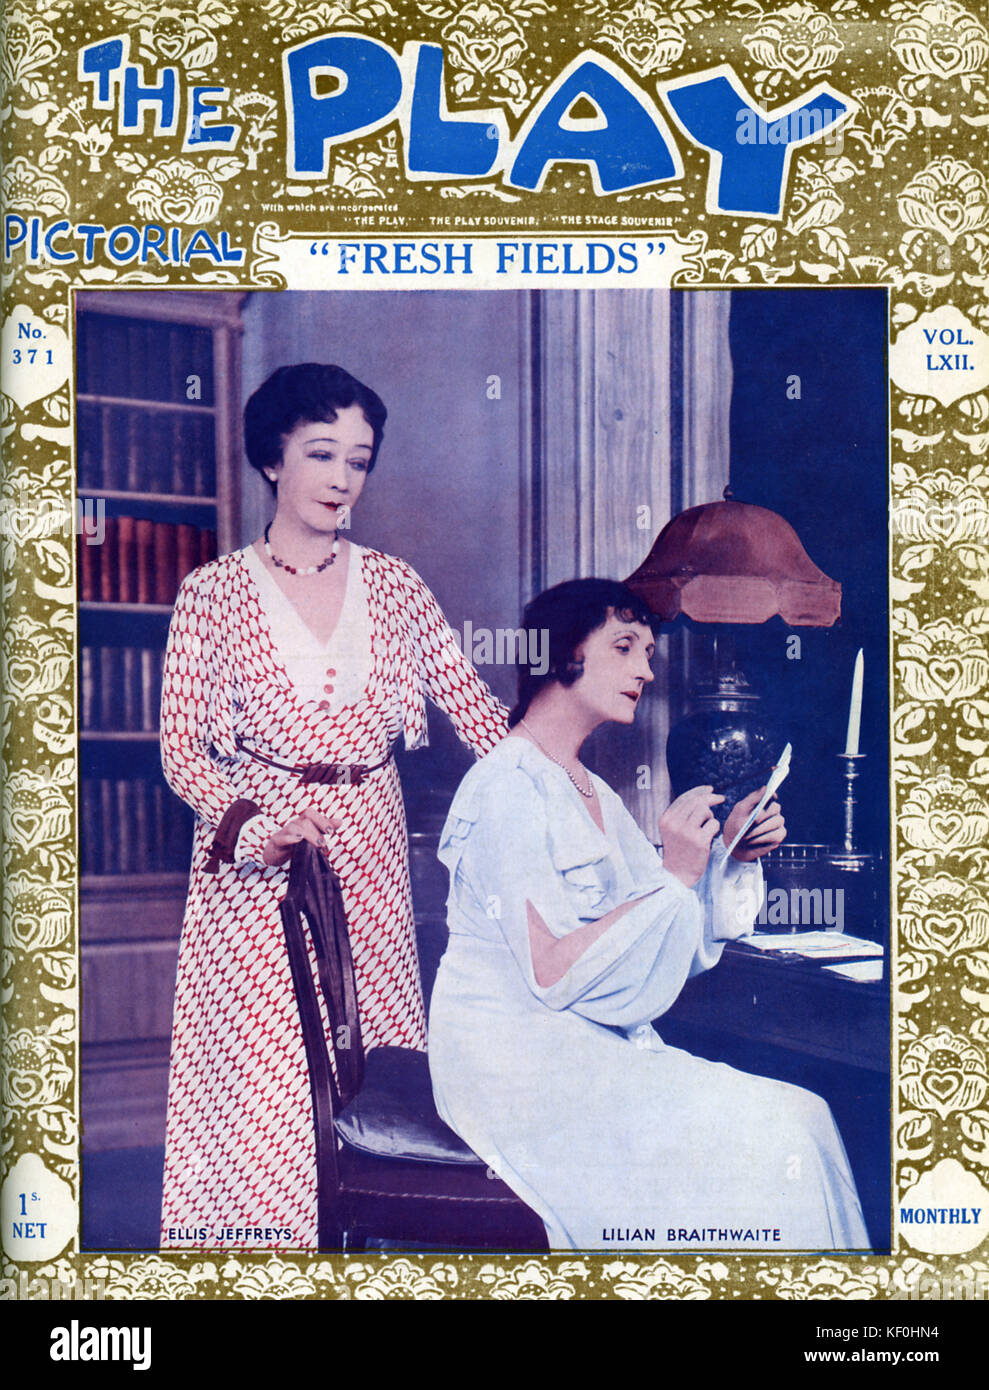 Les champs 'Fresh' par Ivor Novello, avec Ellis Jeffreys (17 mai 1872 - 21 janvier 1943) et Lilian Braithwaite (9 mars 1873 - 17 septembre 1948). Une production londonienne au Criterion Theatre, le 5 janvier 1933. Couvrir de jouer l'Illustré, 1933. Banque D'Images